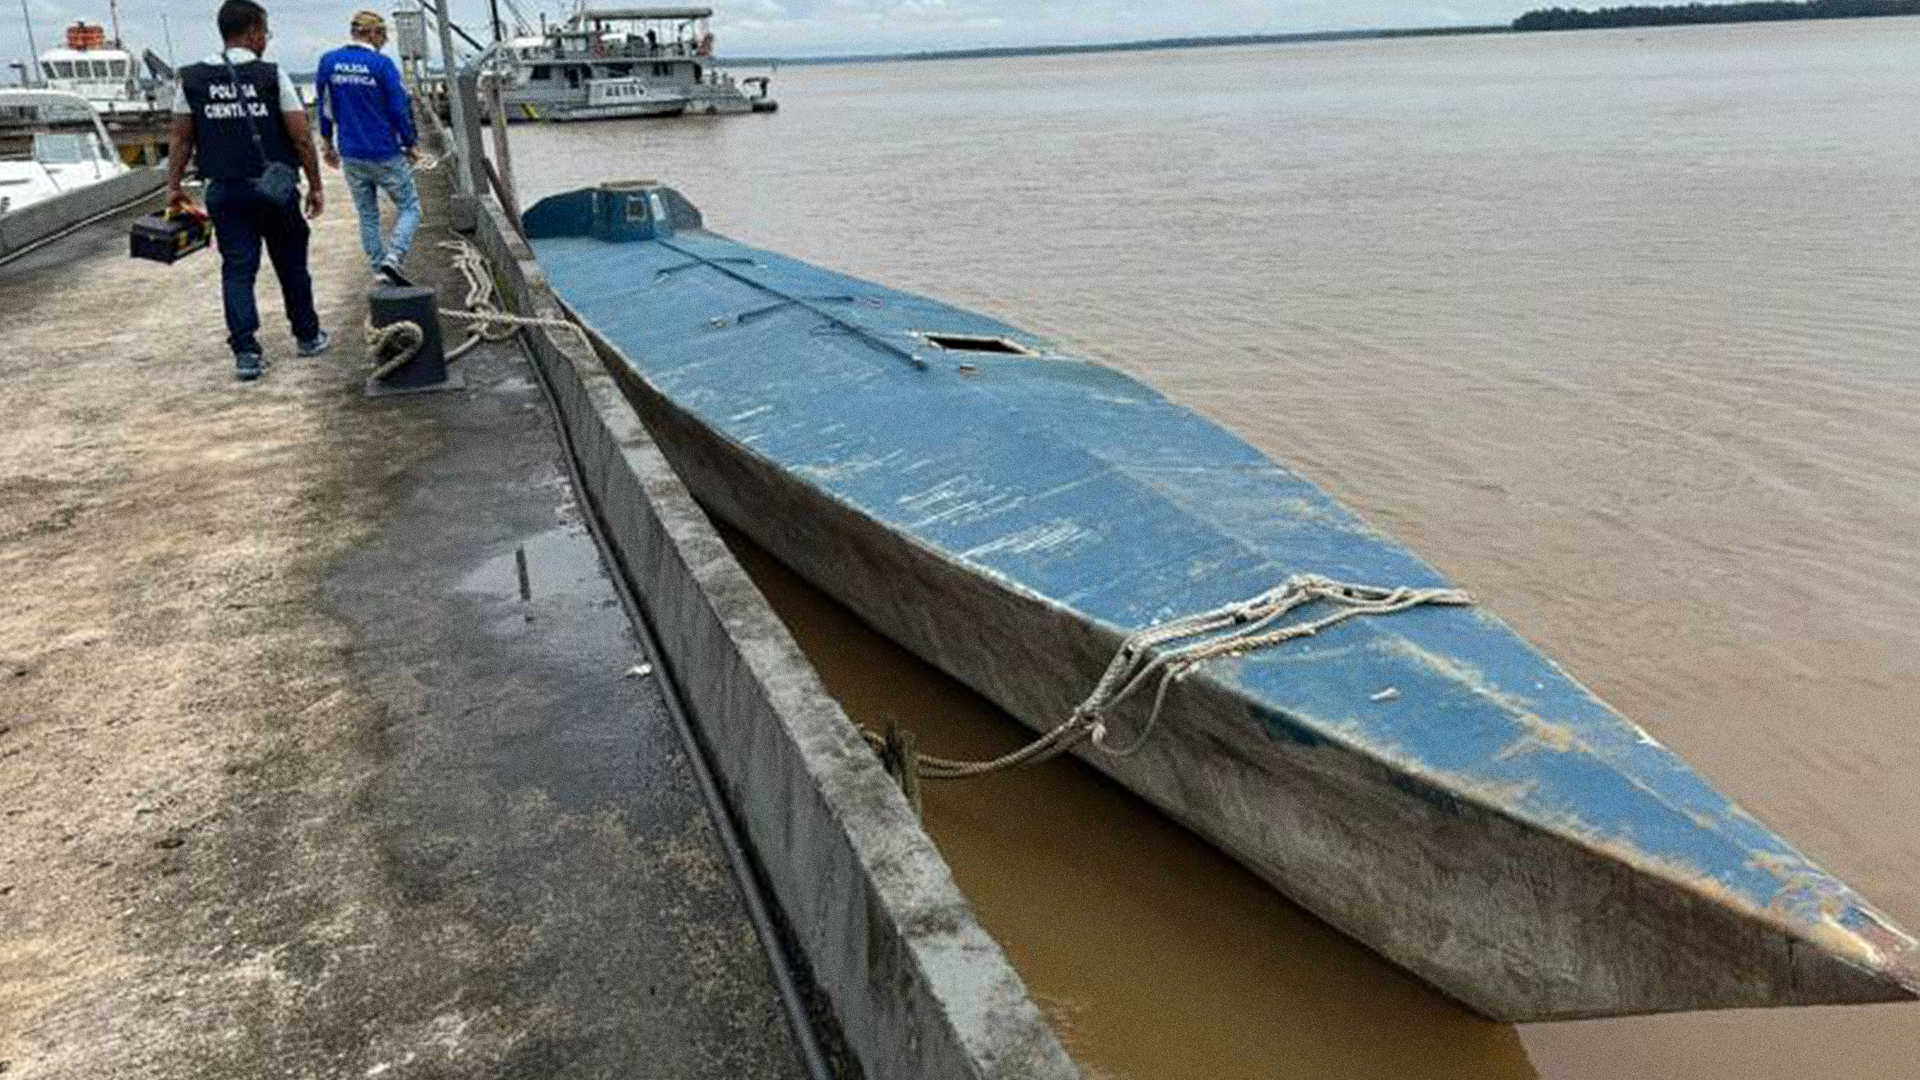 Mistério por trás de uma curiosa embarcação encontrada no Brasil